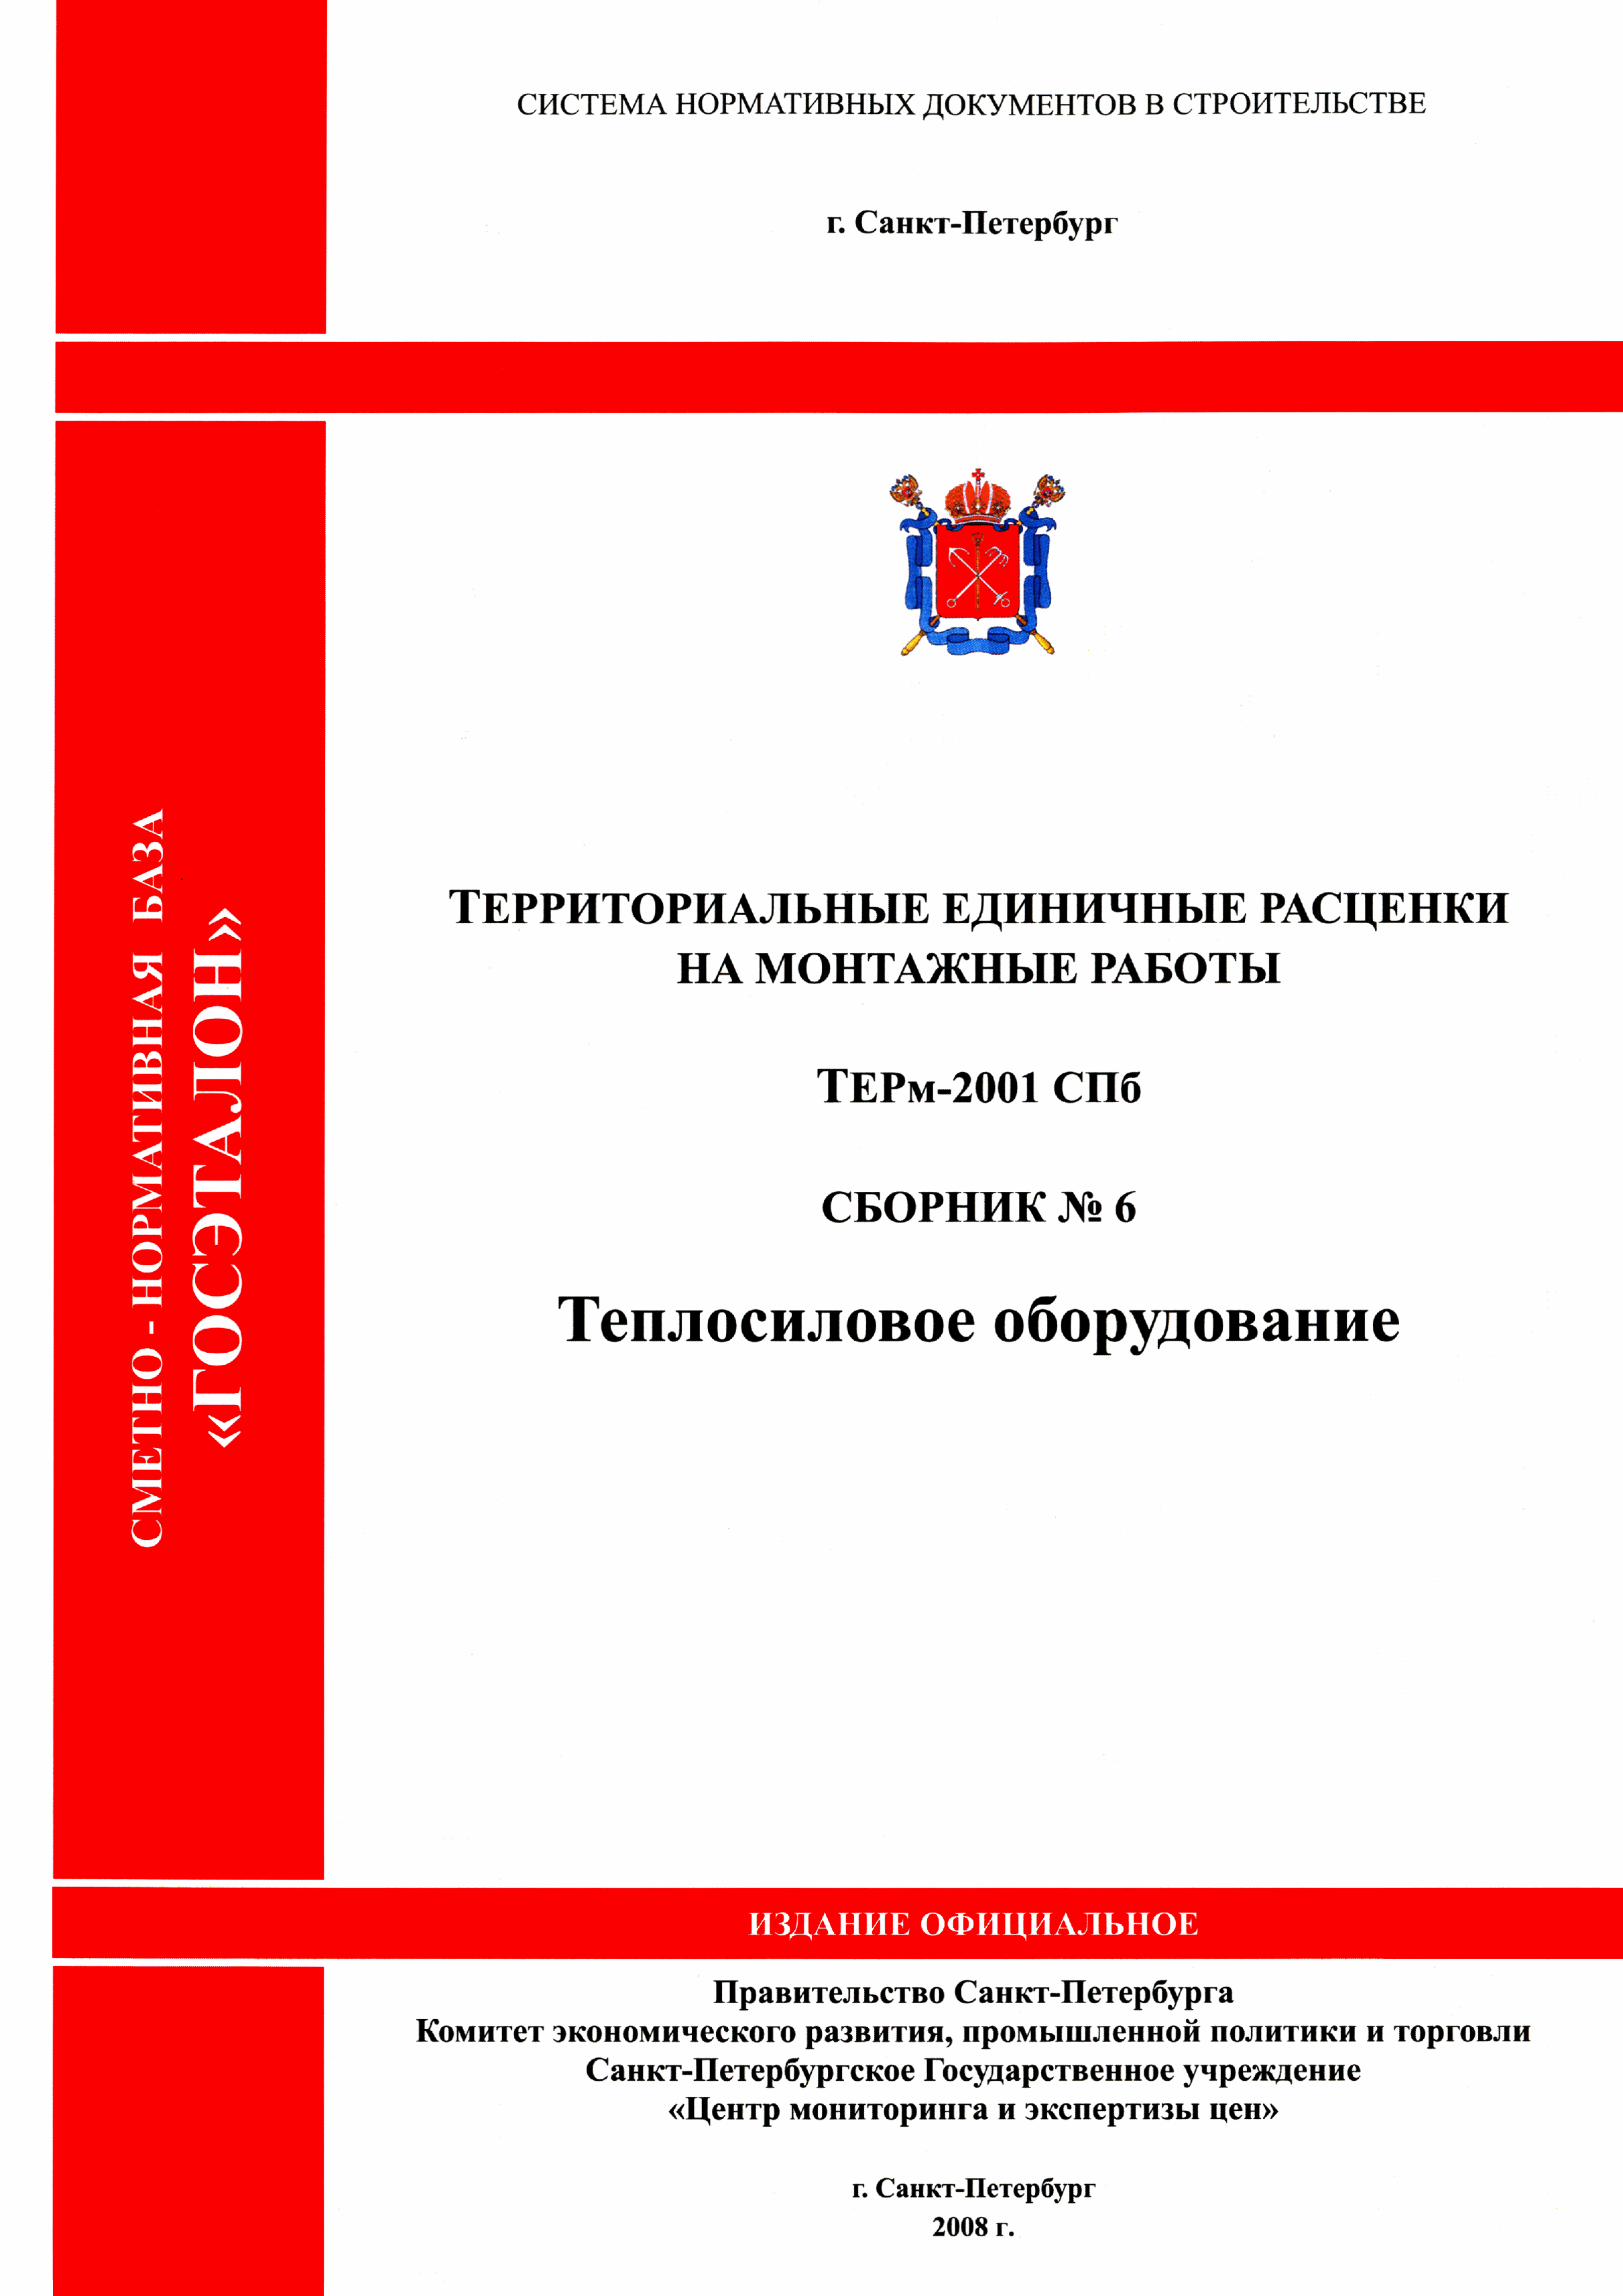 ТЕРм 2001-06 СПб